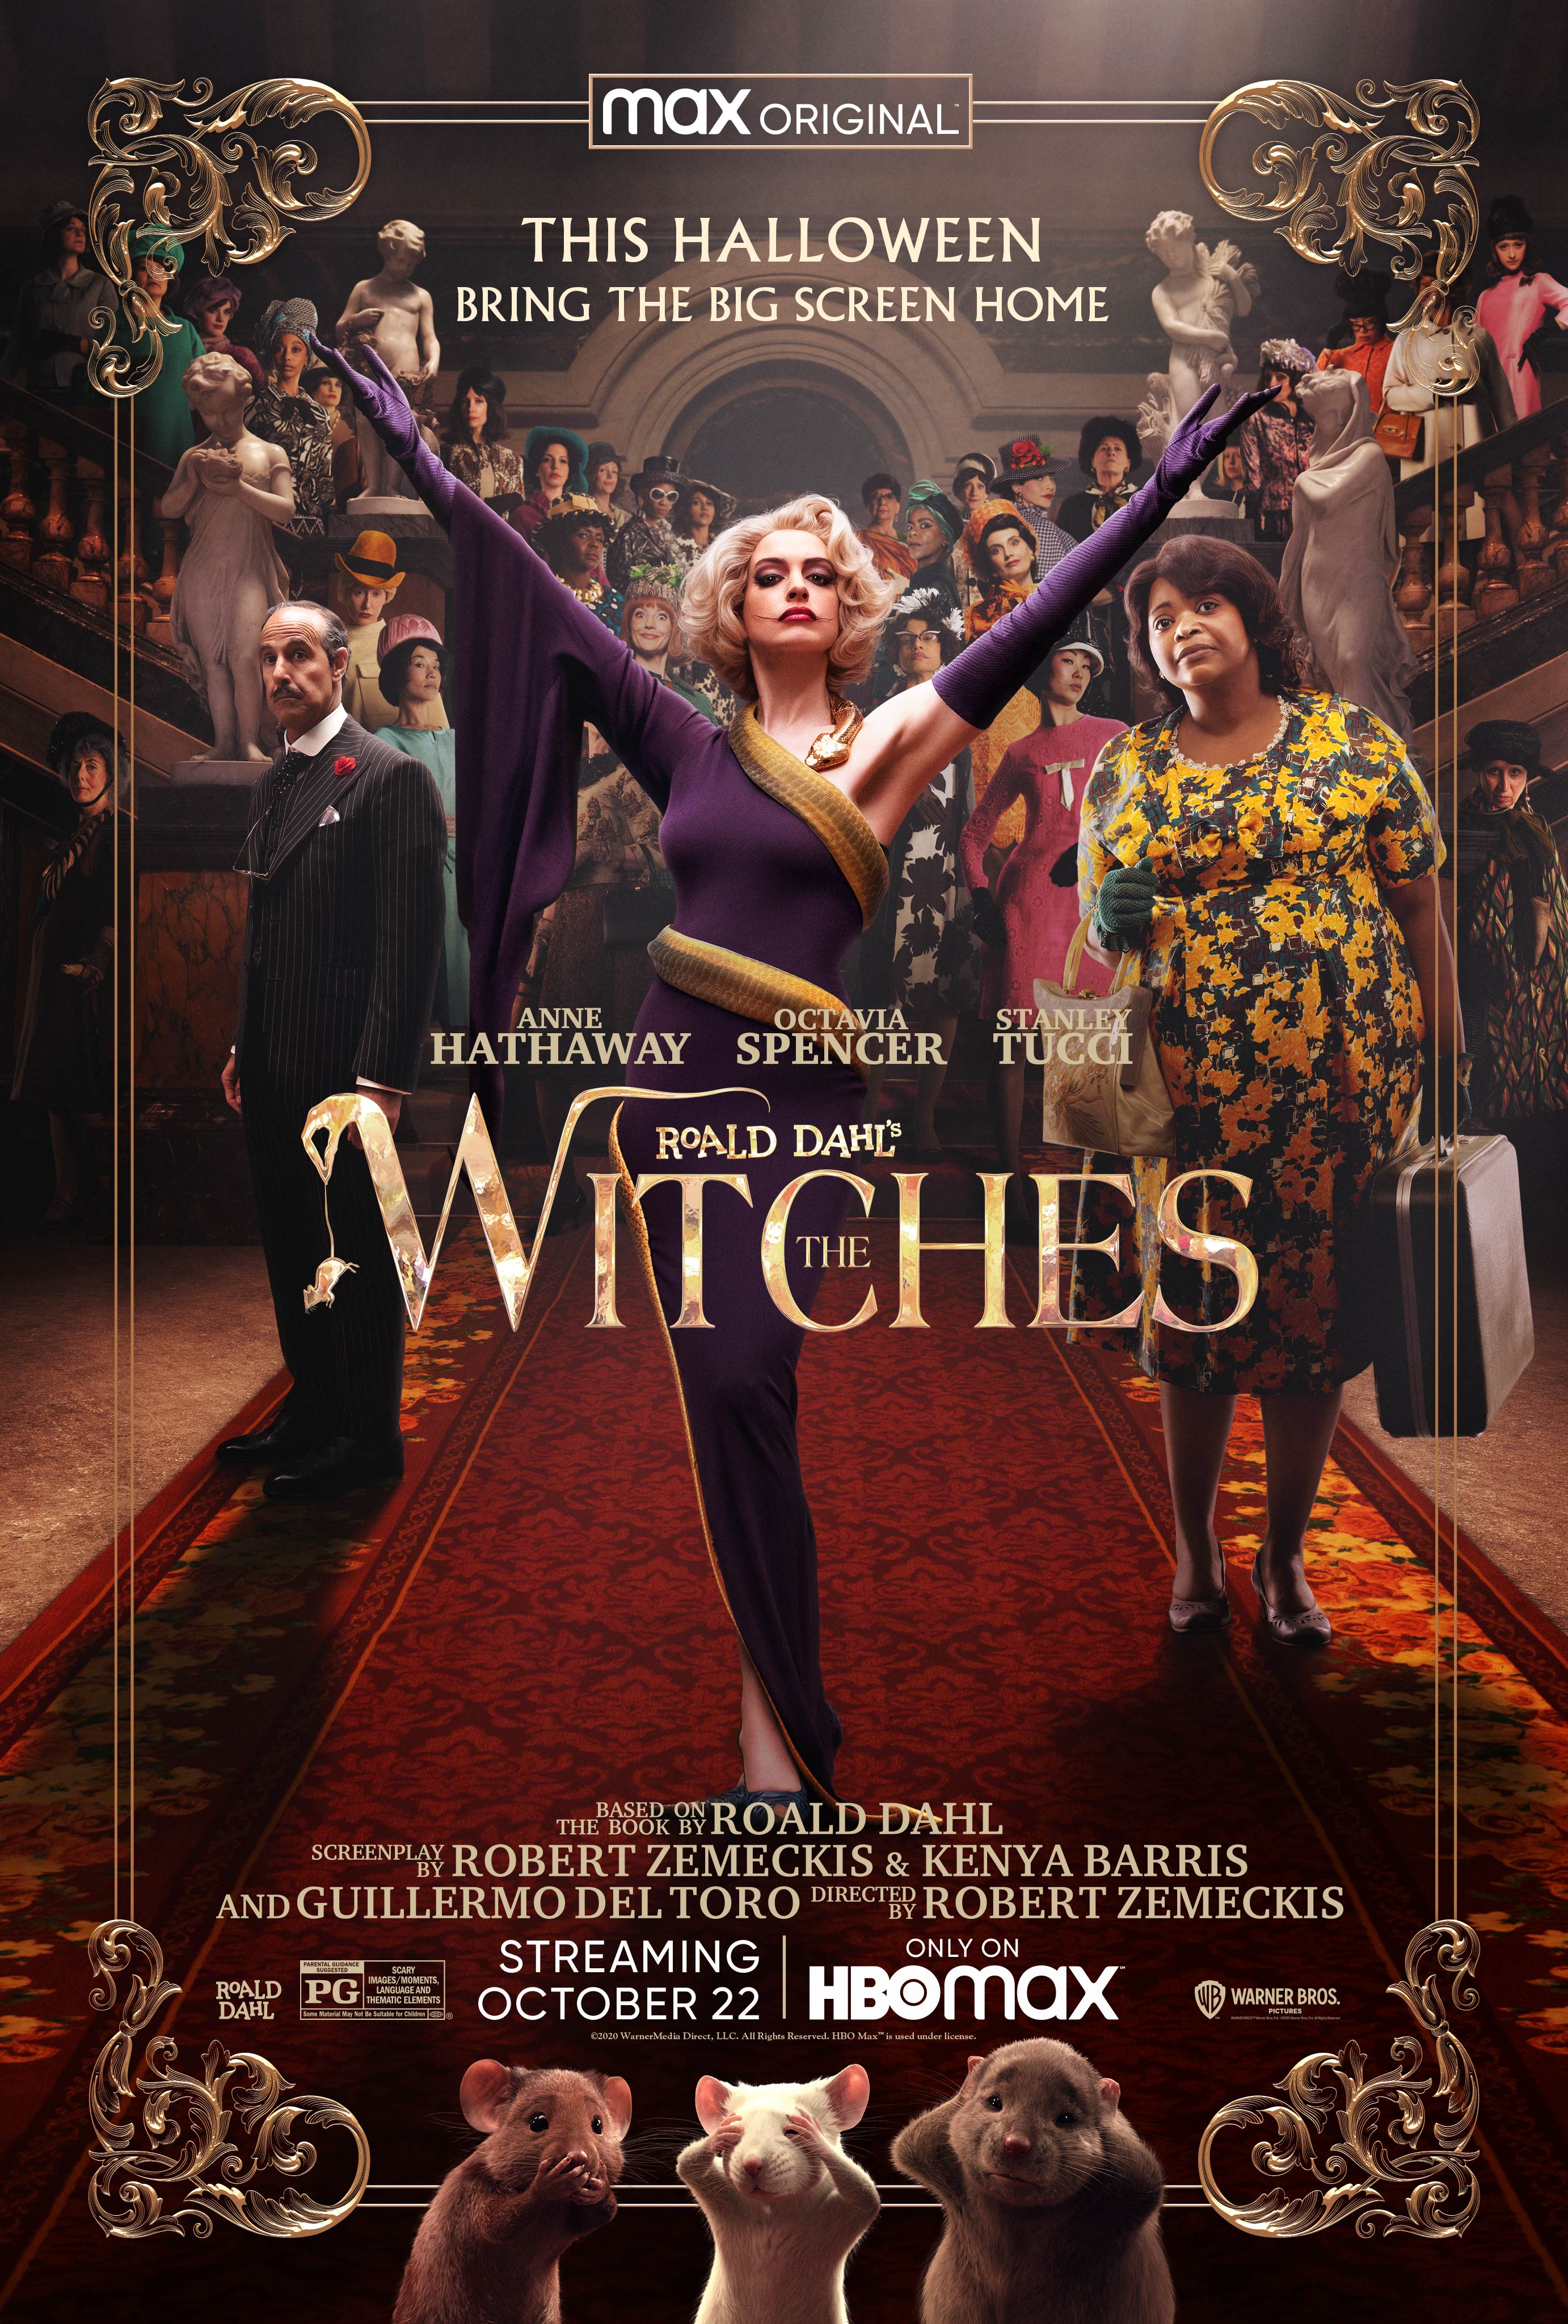 Stiahni si Filmy CZ/SK dabing Carodejnice / The Witches (2020)(CZ) = CSFD 50%